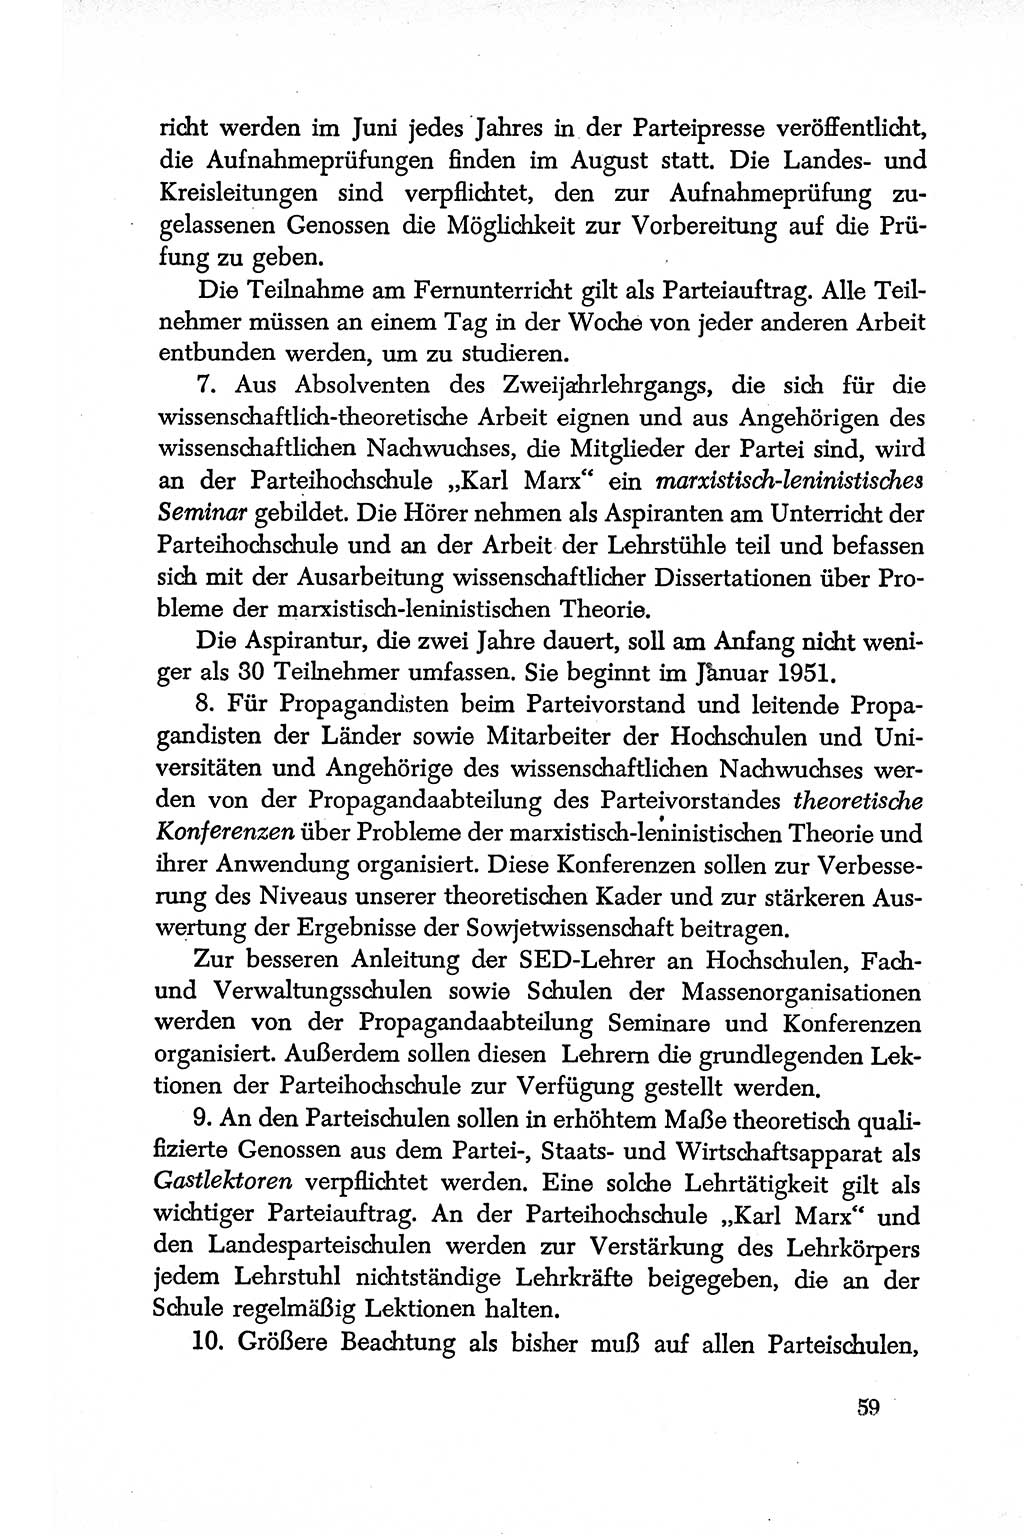 Dokumente der Sozialistischen Einheitspartei Deutschlands (SED) [Deutsche Demokratische Republik (DDR)] 1950-1952, Seite 59 (Dok. SED DDR 1950-1952, S. 59)